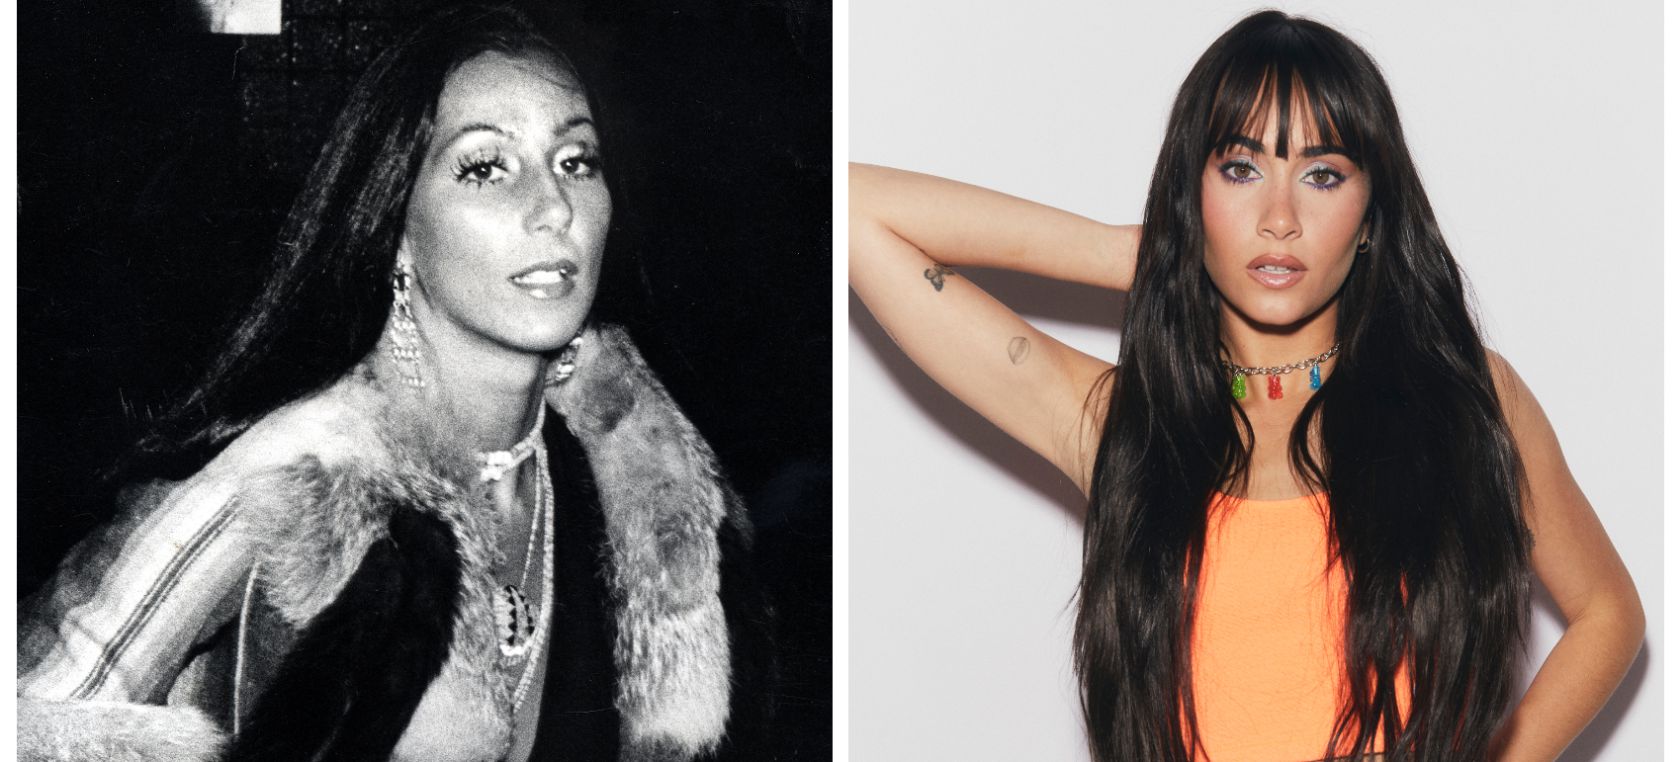 El estilista de Aitana despeja todas las dudas: su nueva imágen está inspirada en Cher